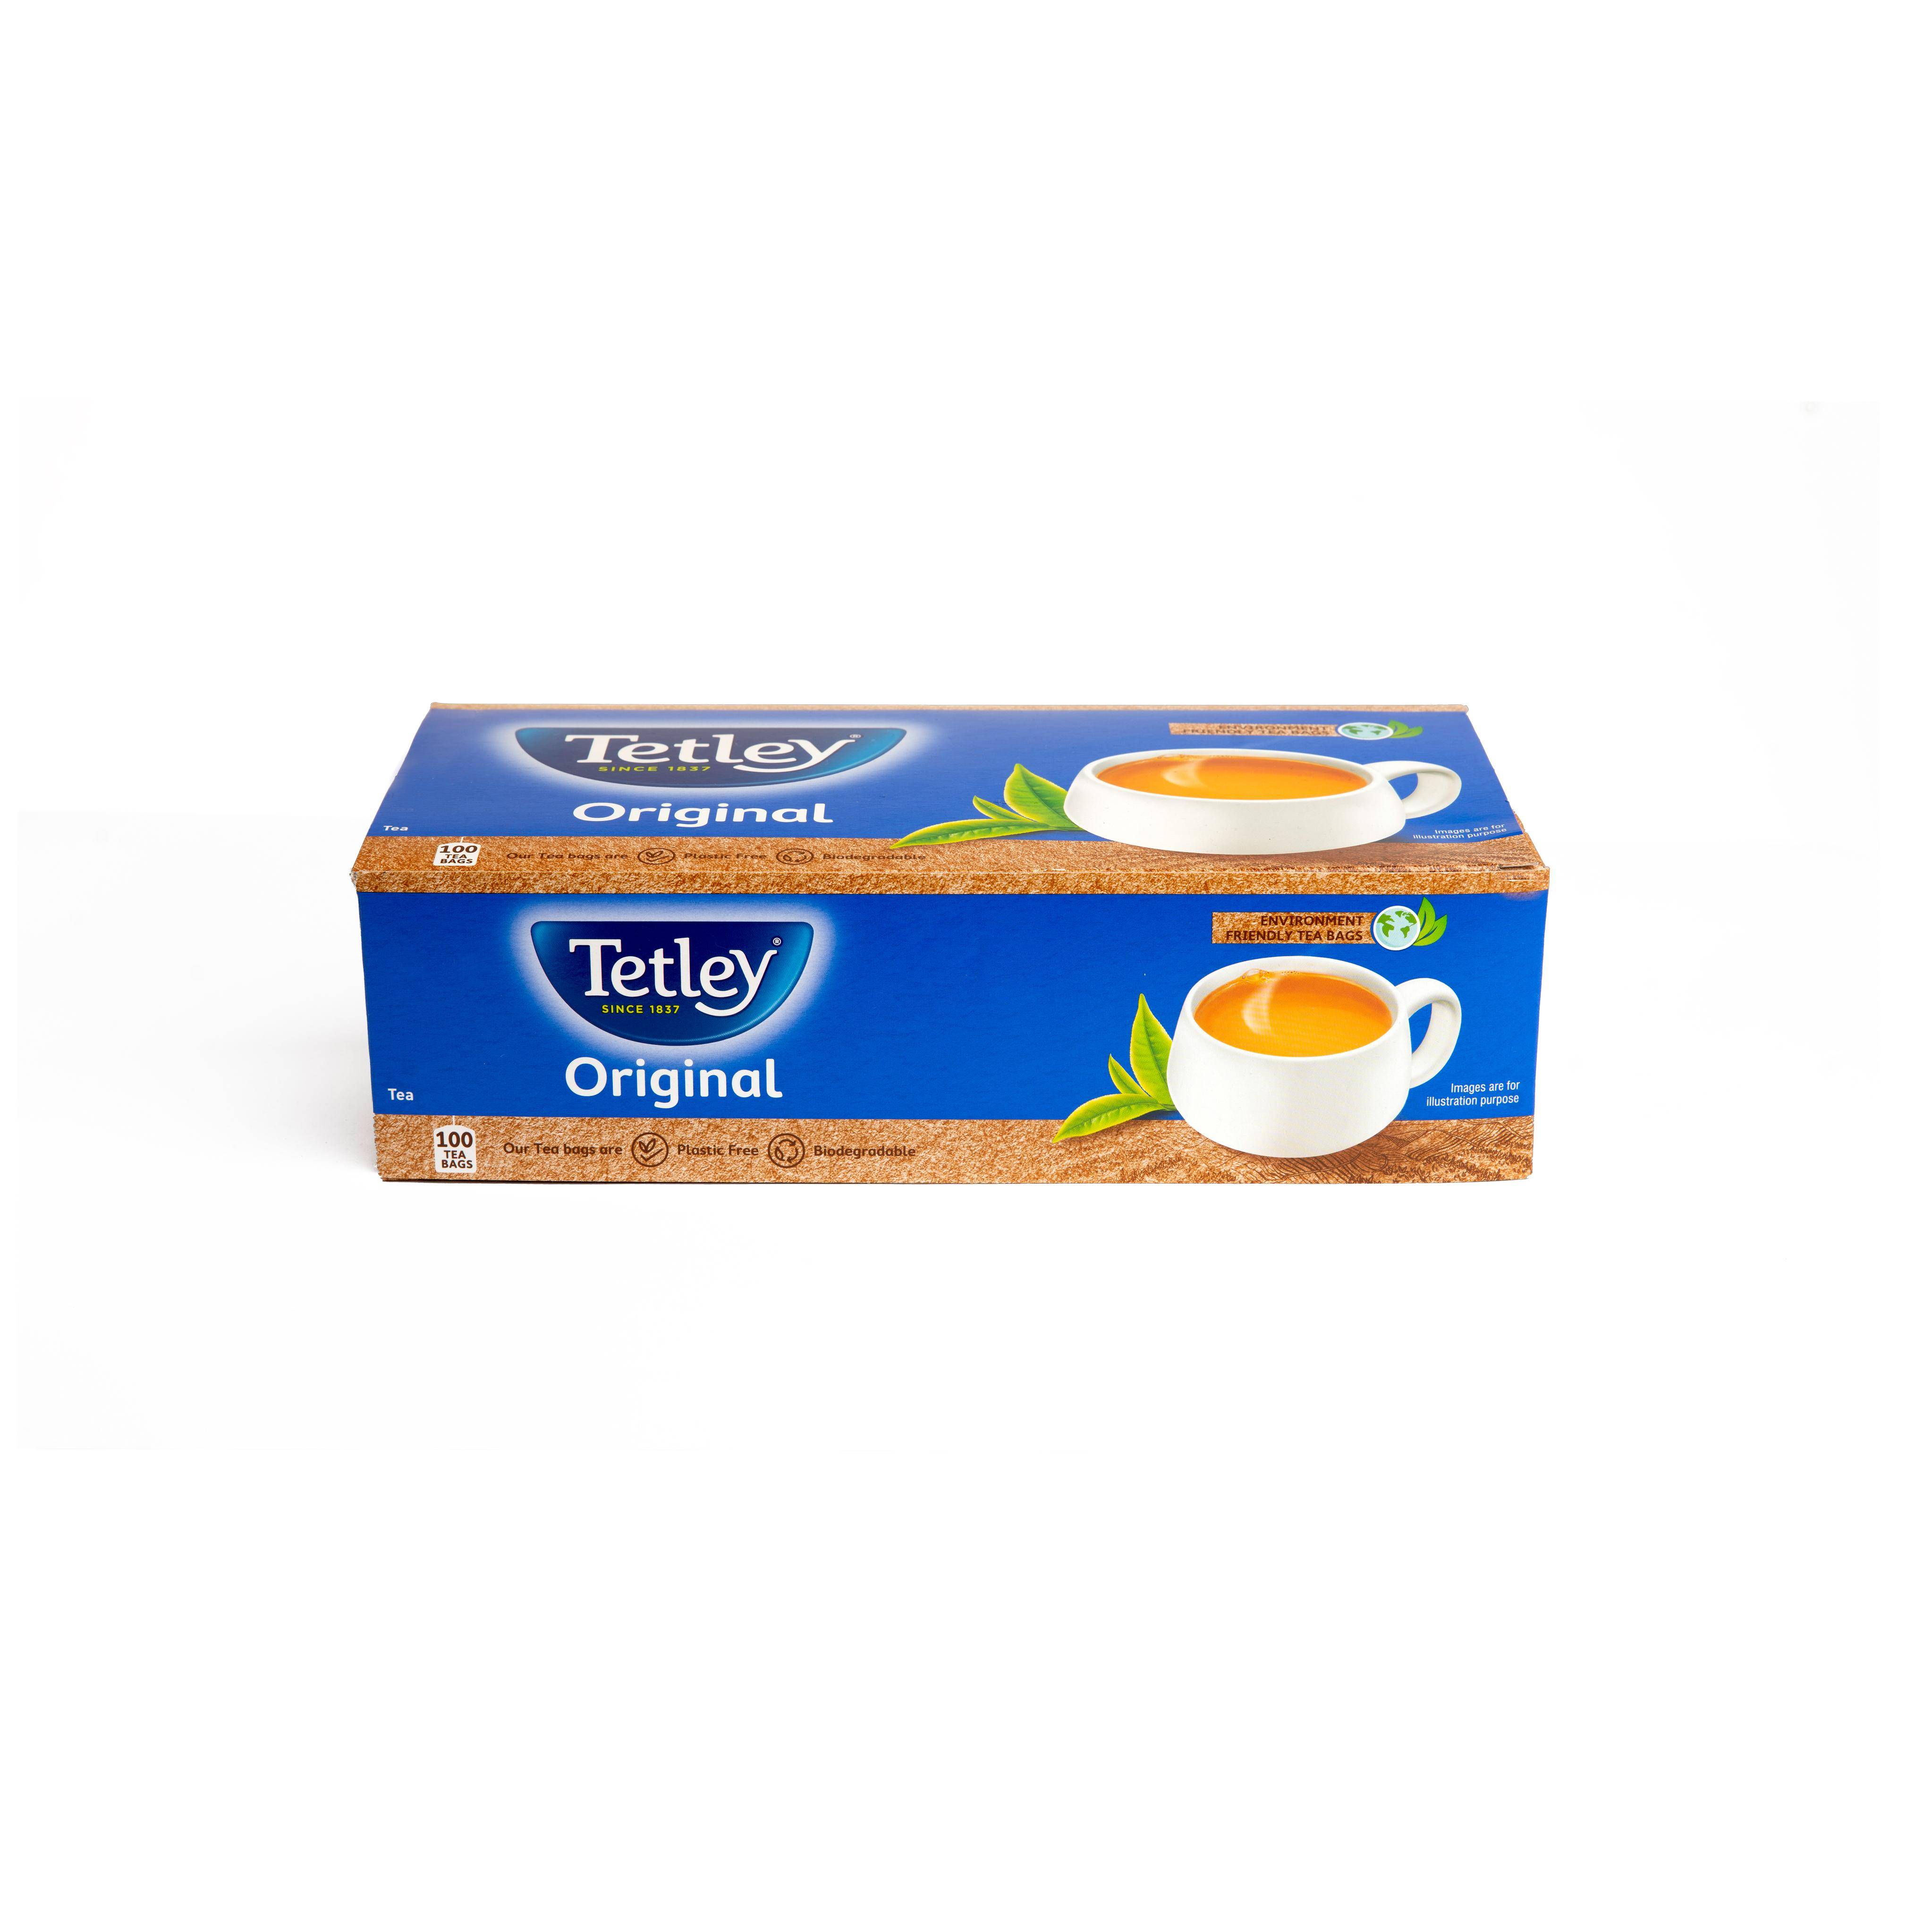 Tetley Regular Tea Original Envelope Tea Bags 100s - Image 5